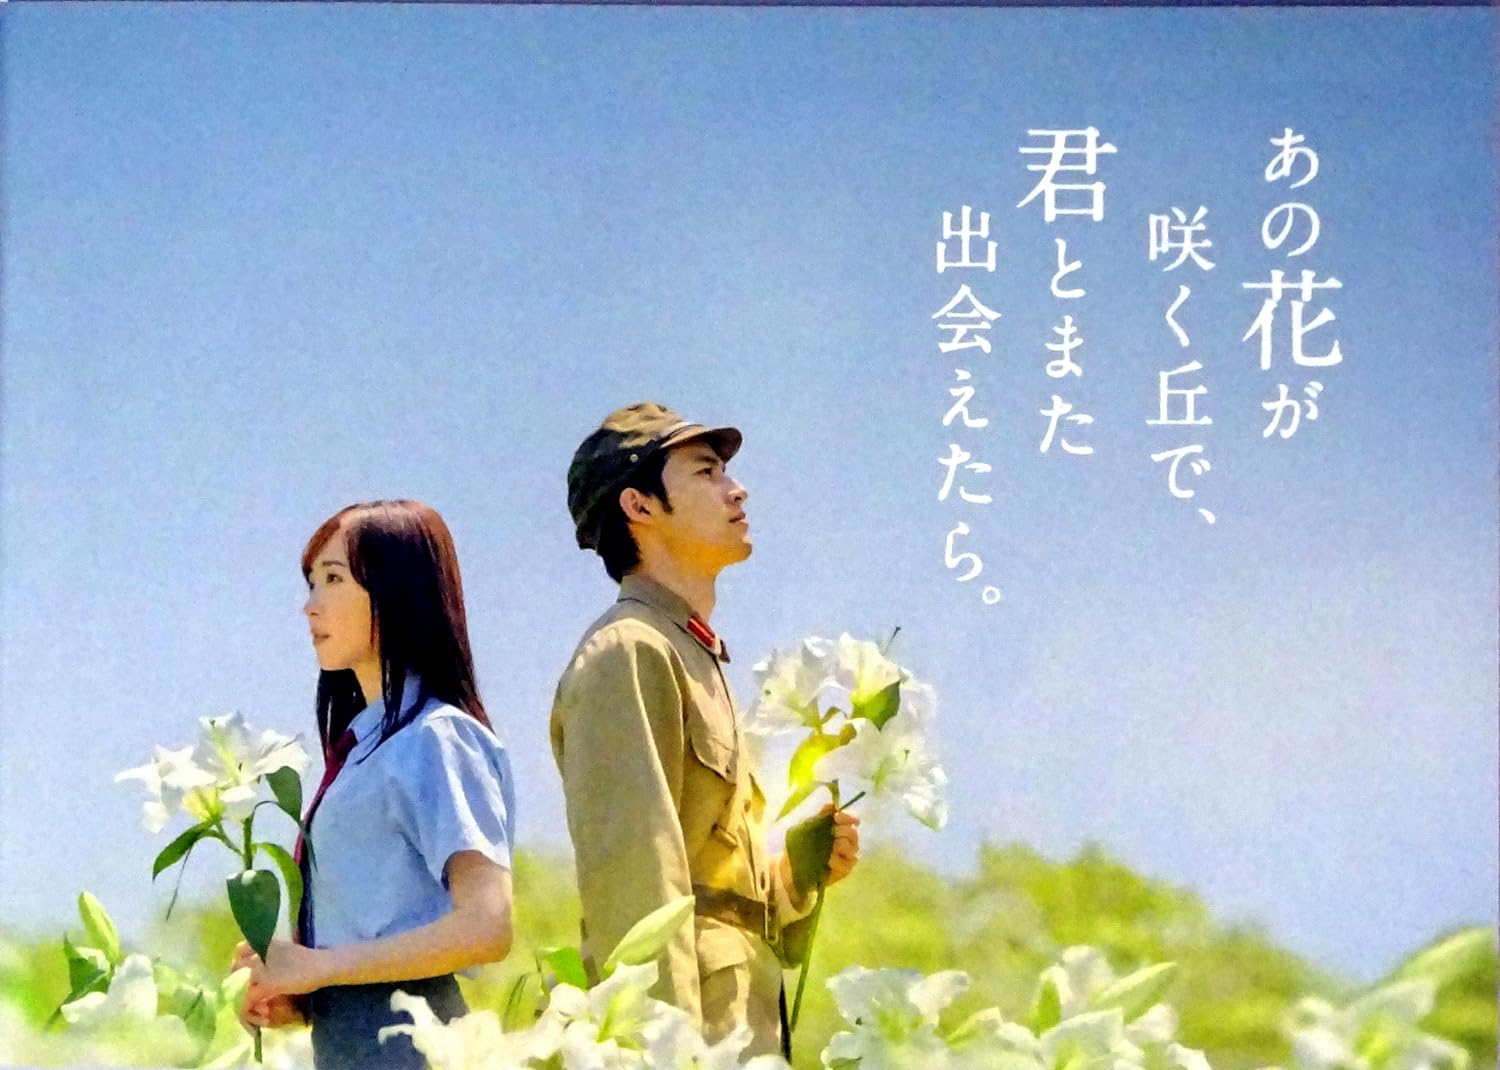 【映画パンフレット】 『あの花が咲く丘で 君とまた出会えたら。』 出演:福原遥.水上恒司.伊藤健太郎